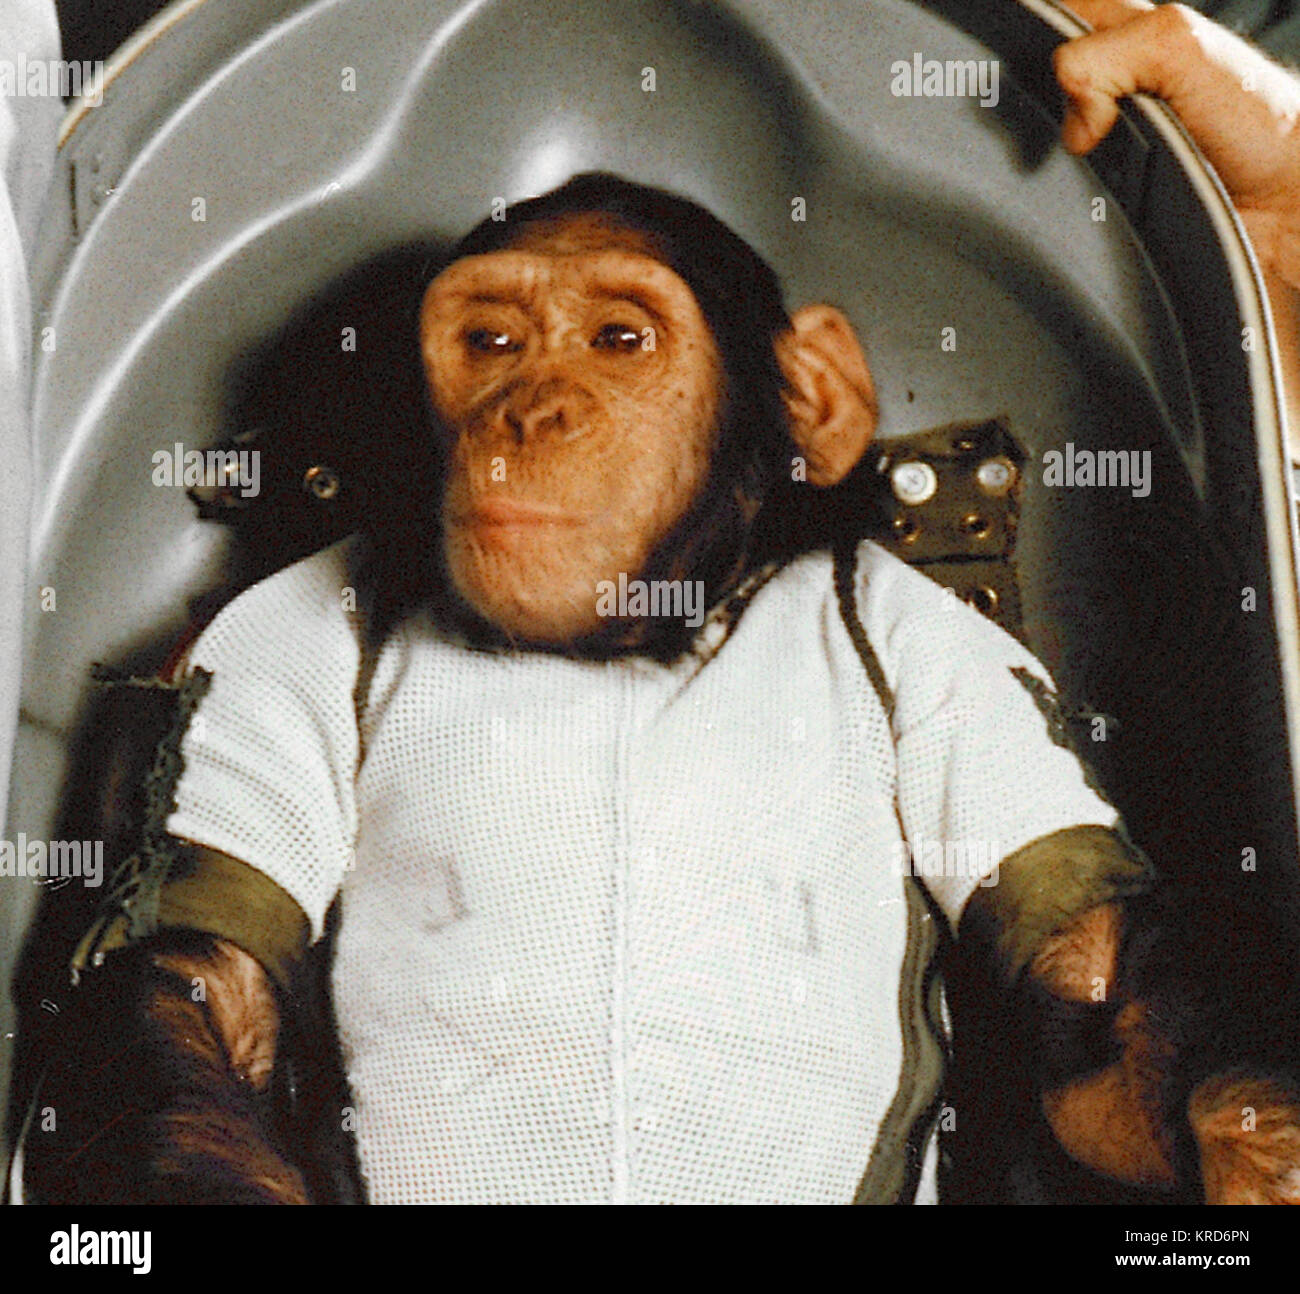 El chimpancé Ham en camilla Biopack - recortado Foto de stock